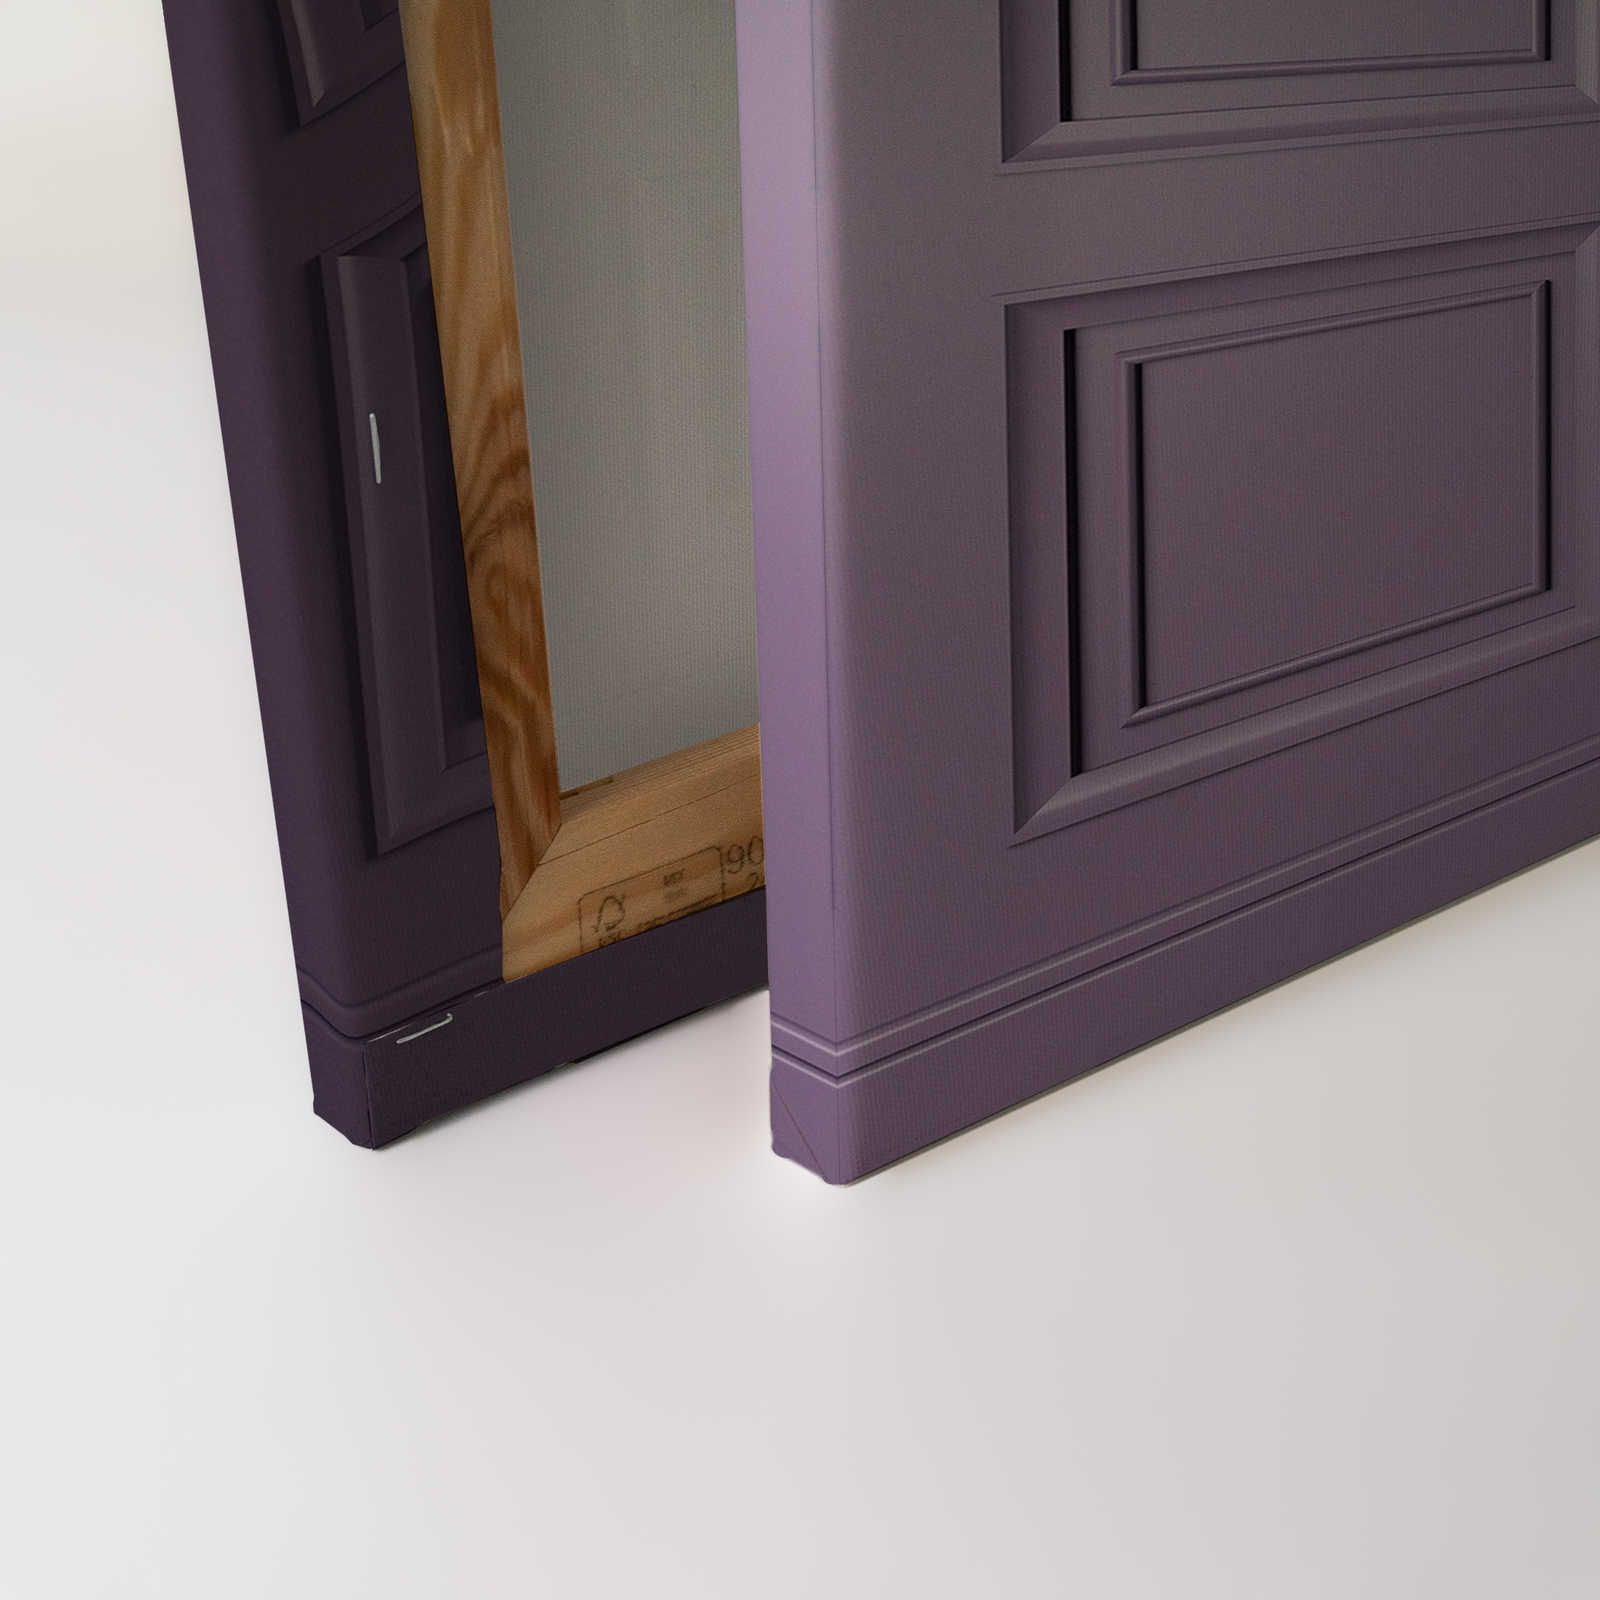             Kensington 3 - 3D Canvas painting wood paneling dark purple, violet - 0.90 m x 0.60 m
        